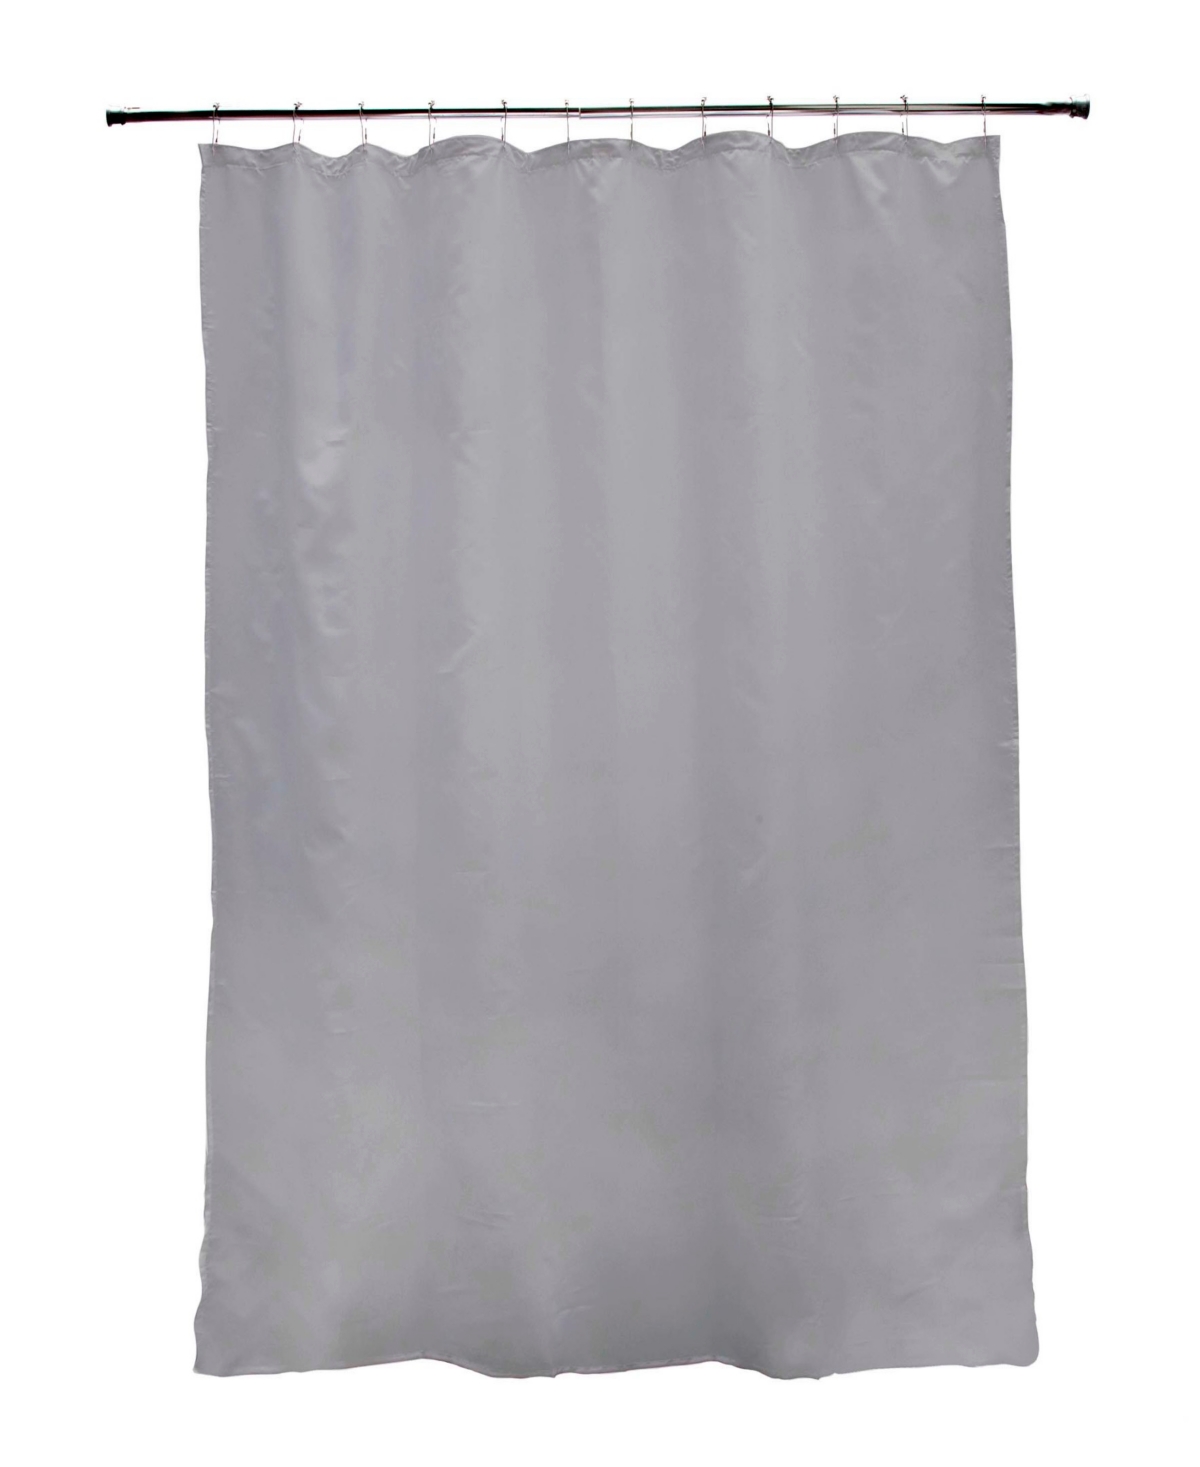 Kenney Medium Weight Peva Shower Curtain Liner In Gray